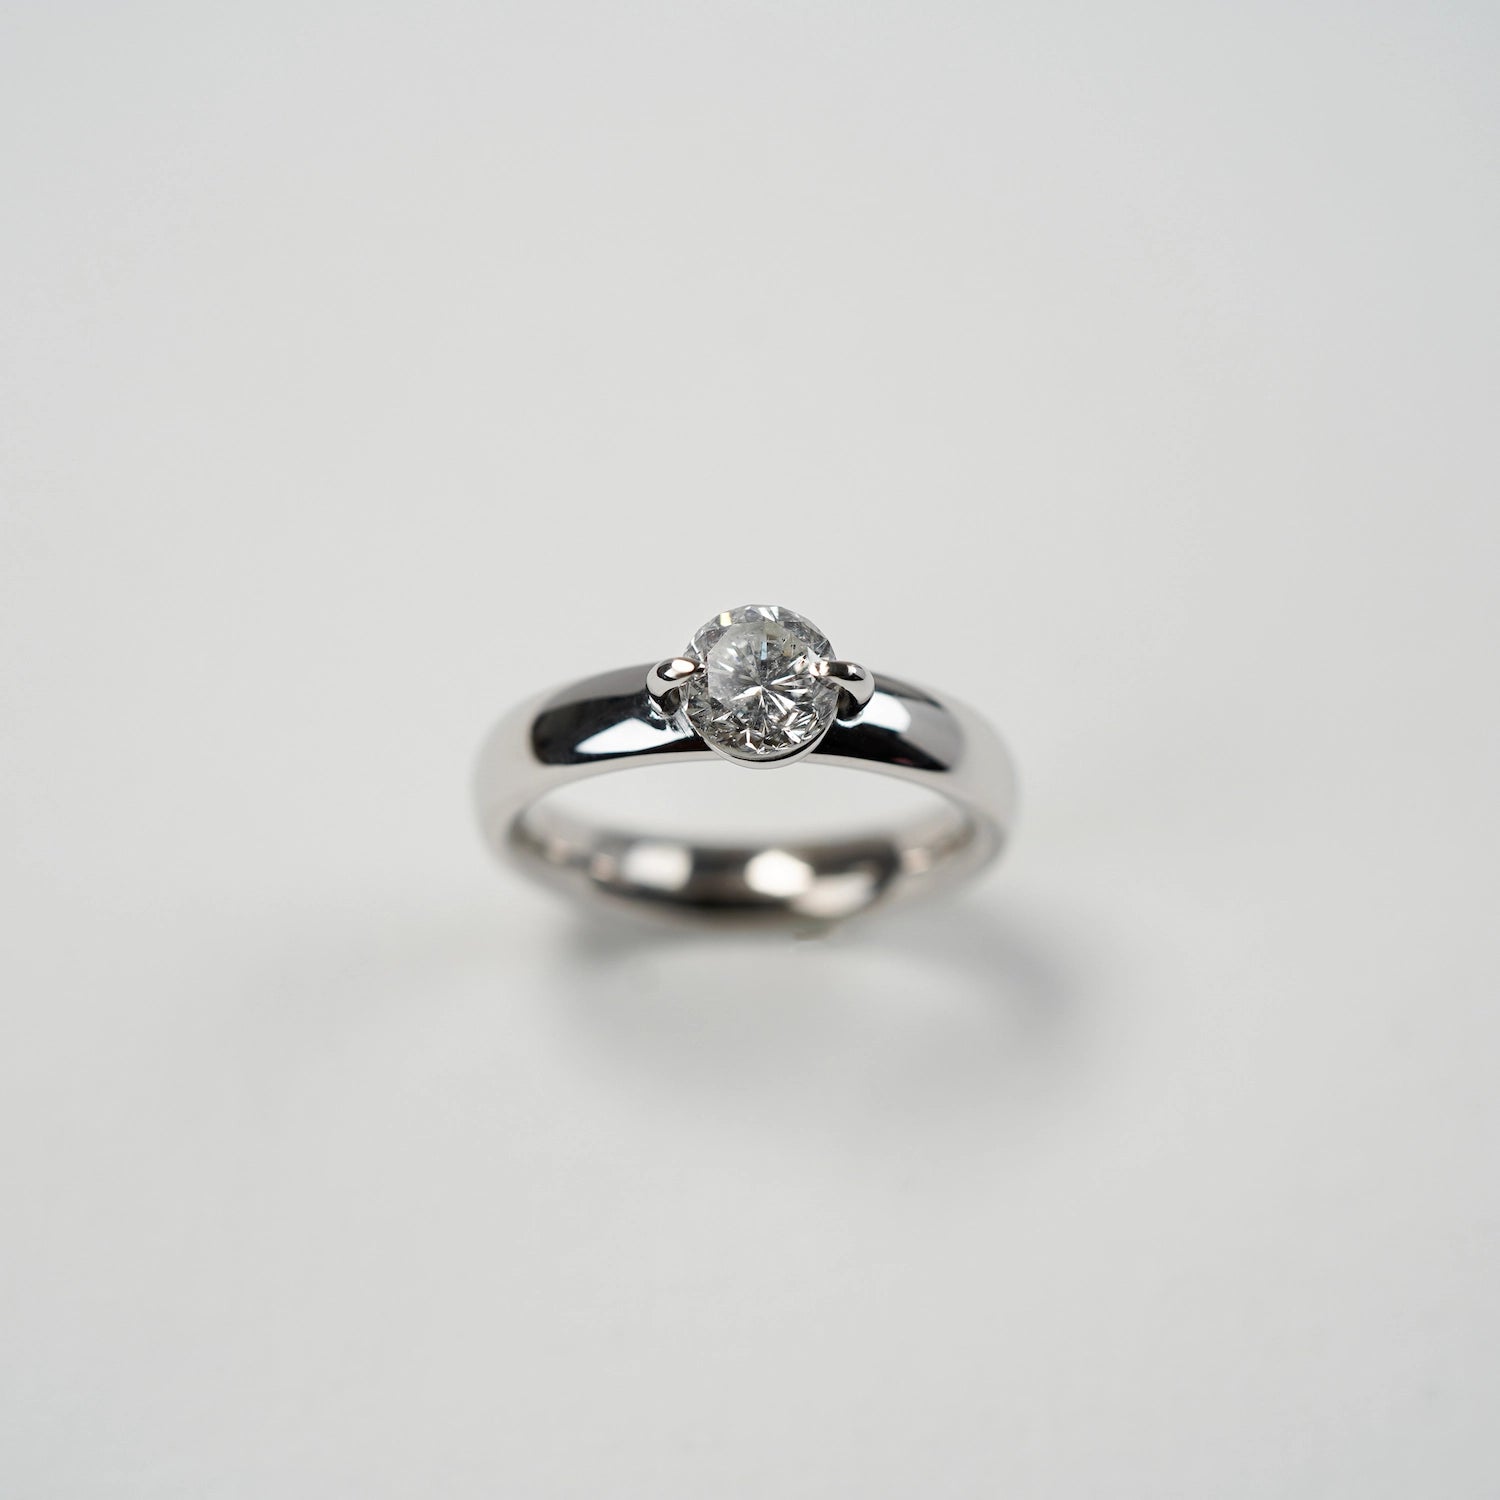 Produktfoto des Solitaire Diamant Rings mit einem 1,10ct Brillanten